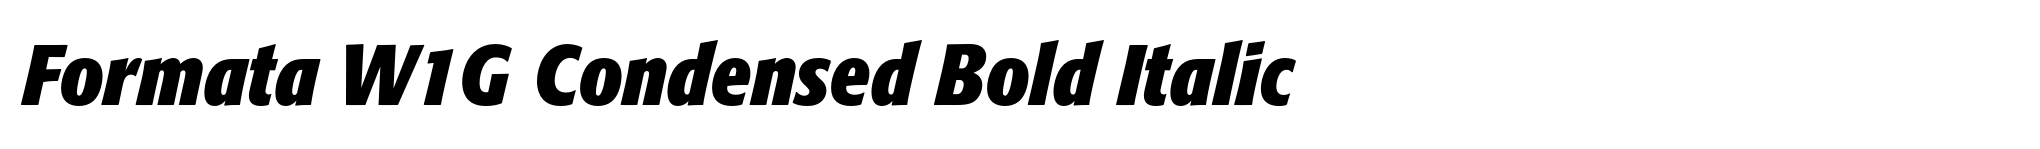 Formata W1G Condensed Bold Italic image